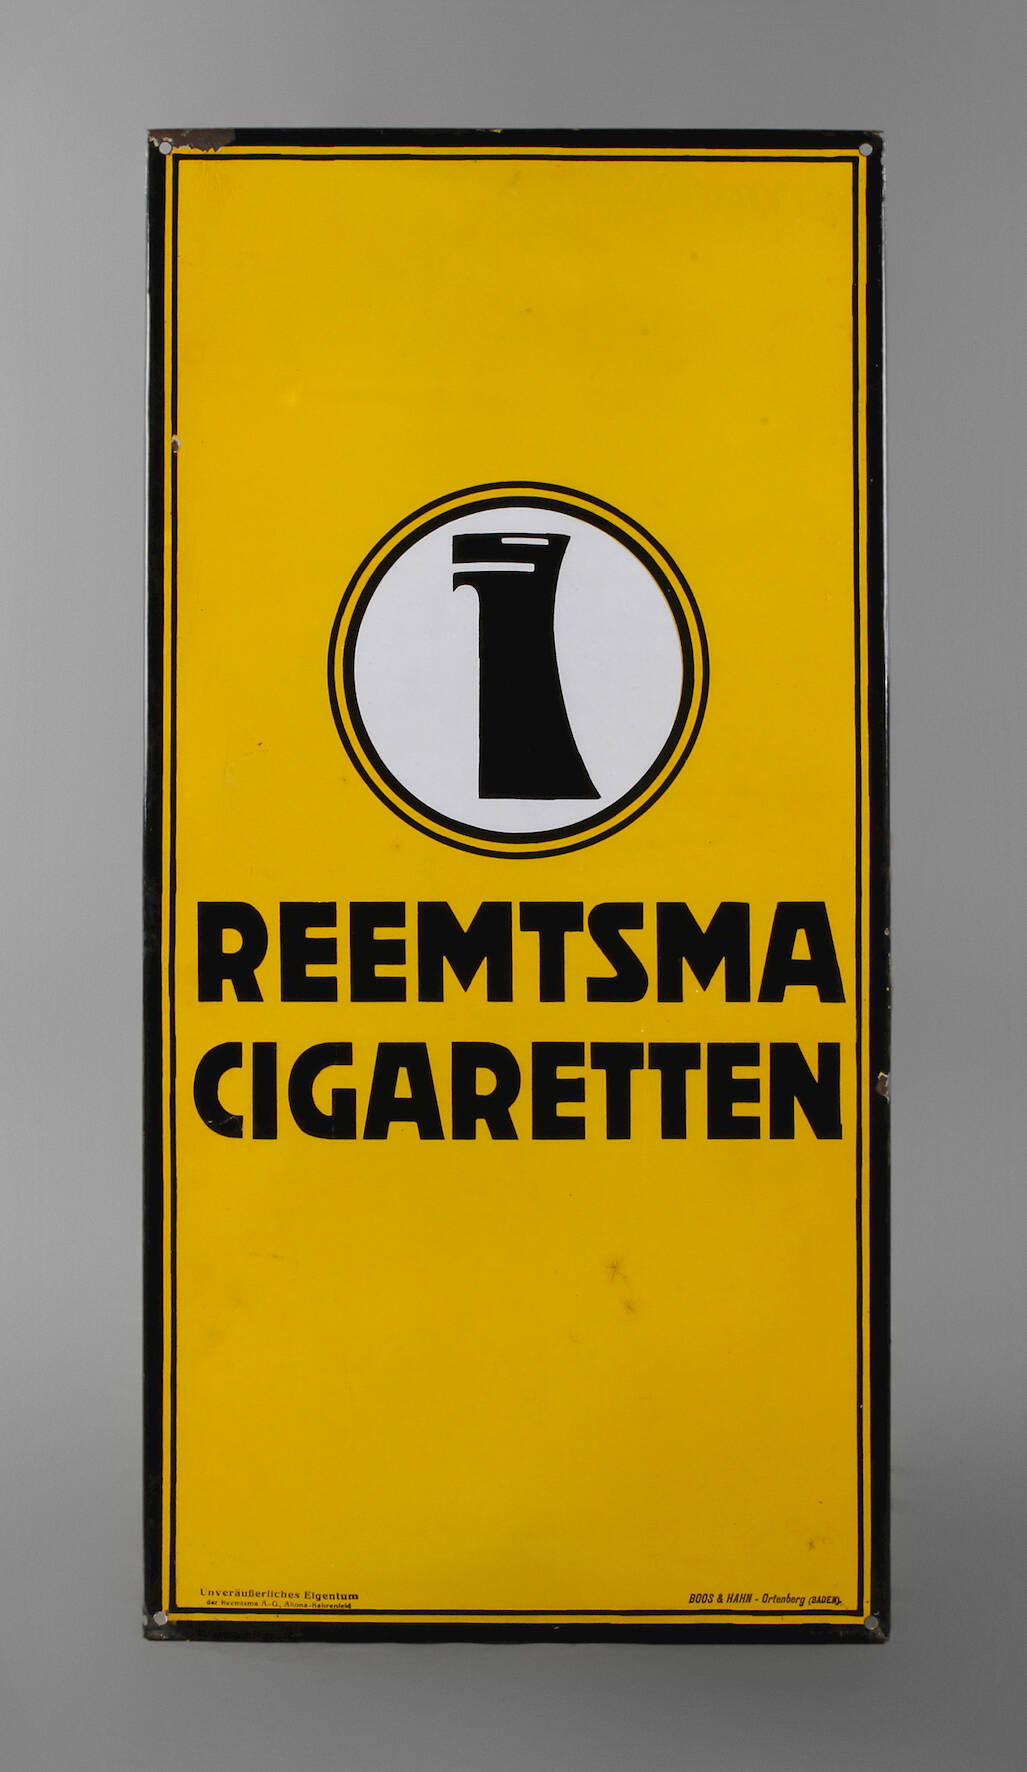 Werbeschild Reemtsma Cigaretten